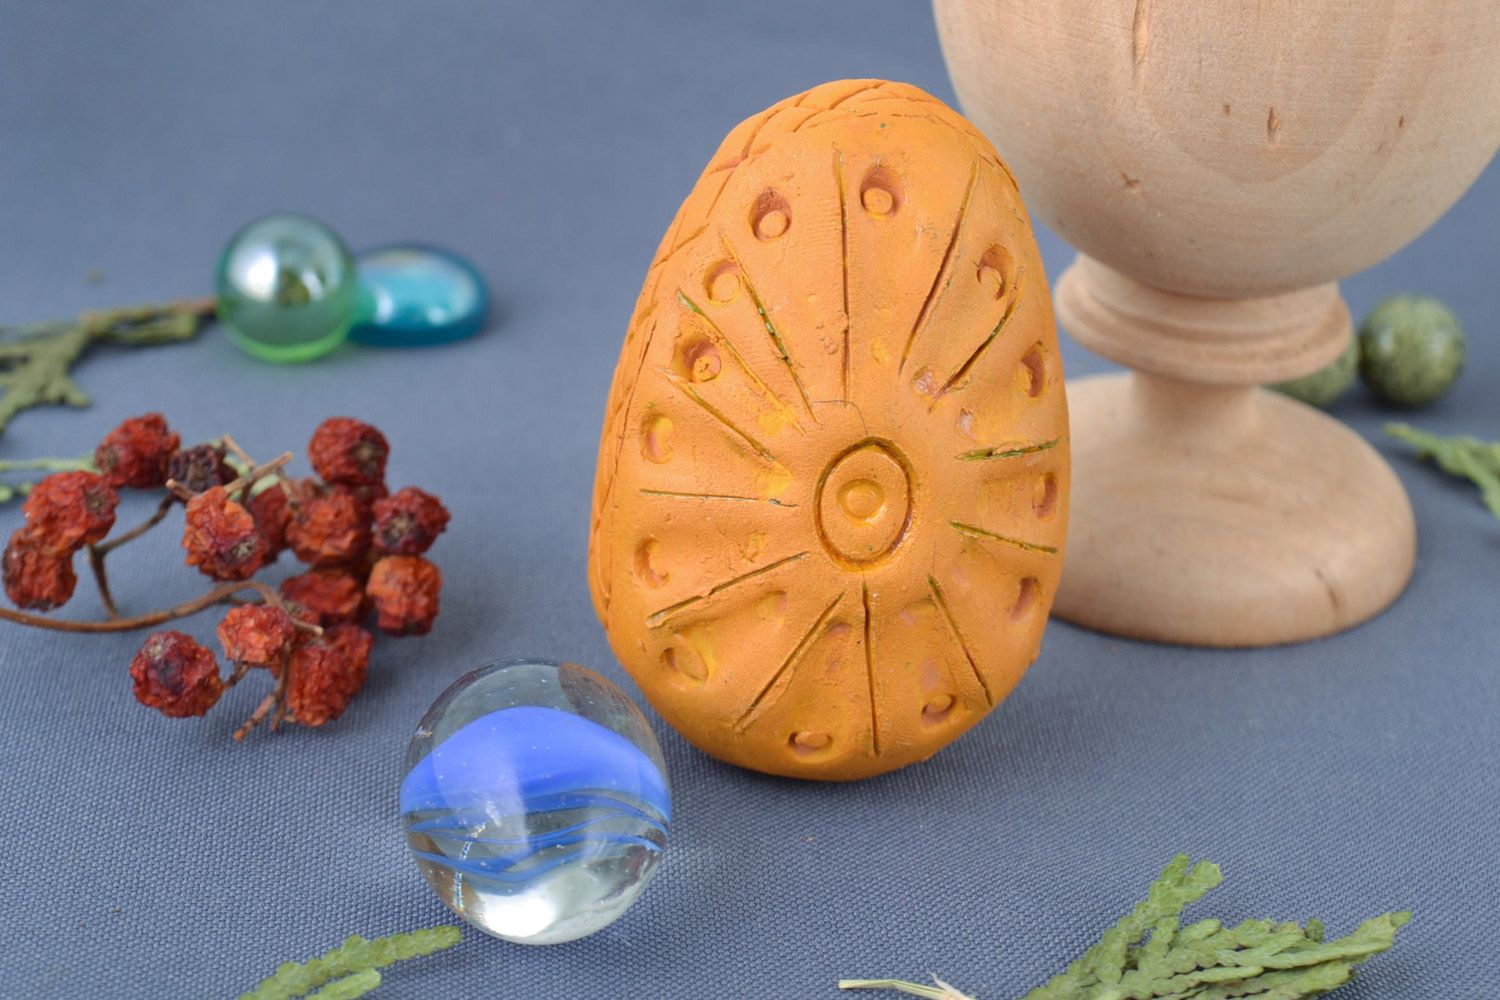 Декоративное пасхальное яйцо глиняное расписанное акриловыми красками хэнд мэйд фото 1